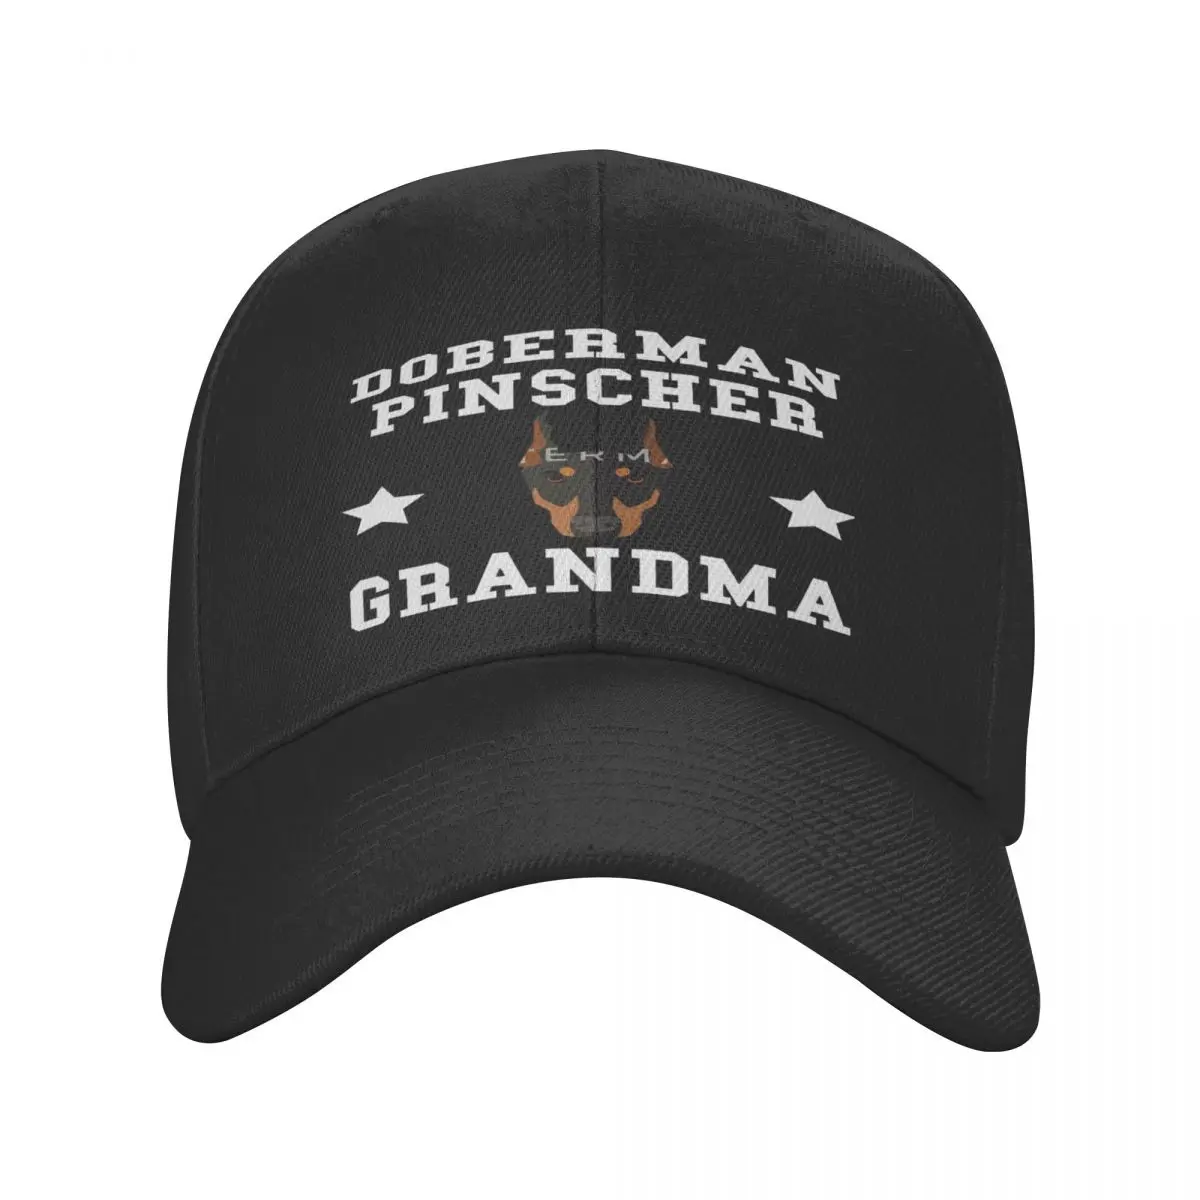 

Кепка Doberman Pinscher бабушка Granddog, Кепка из полиэстера, персонализированная шапка, впитывающая влагу, подходит для ежедневного хорошего подарка